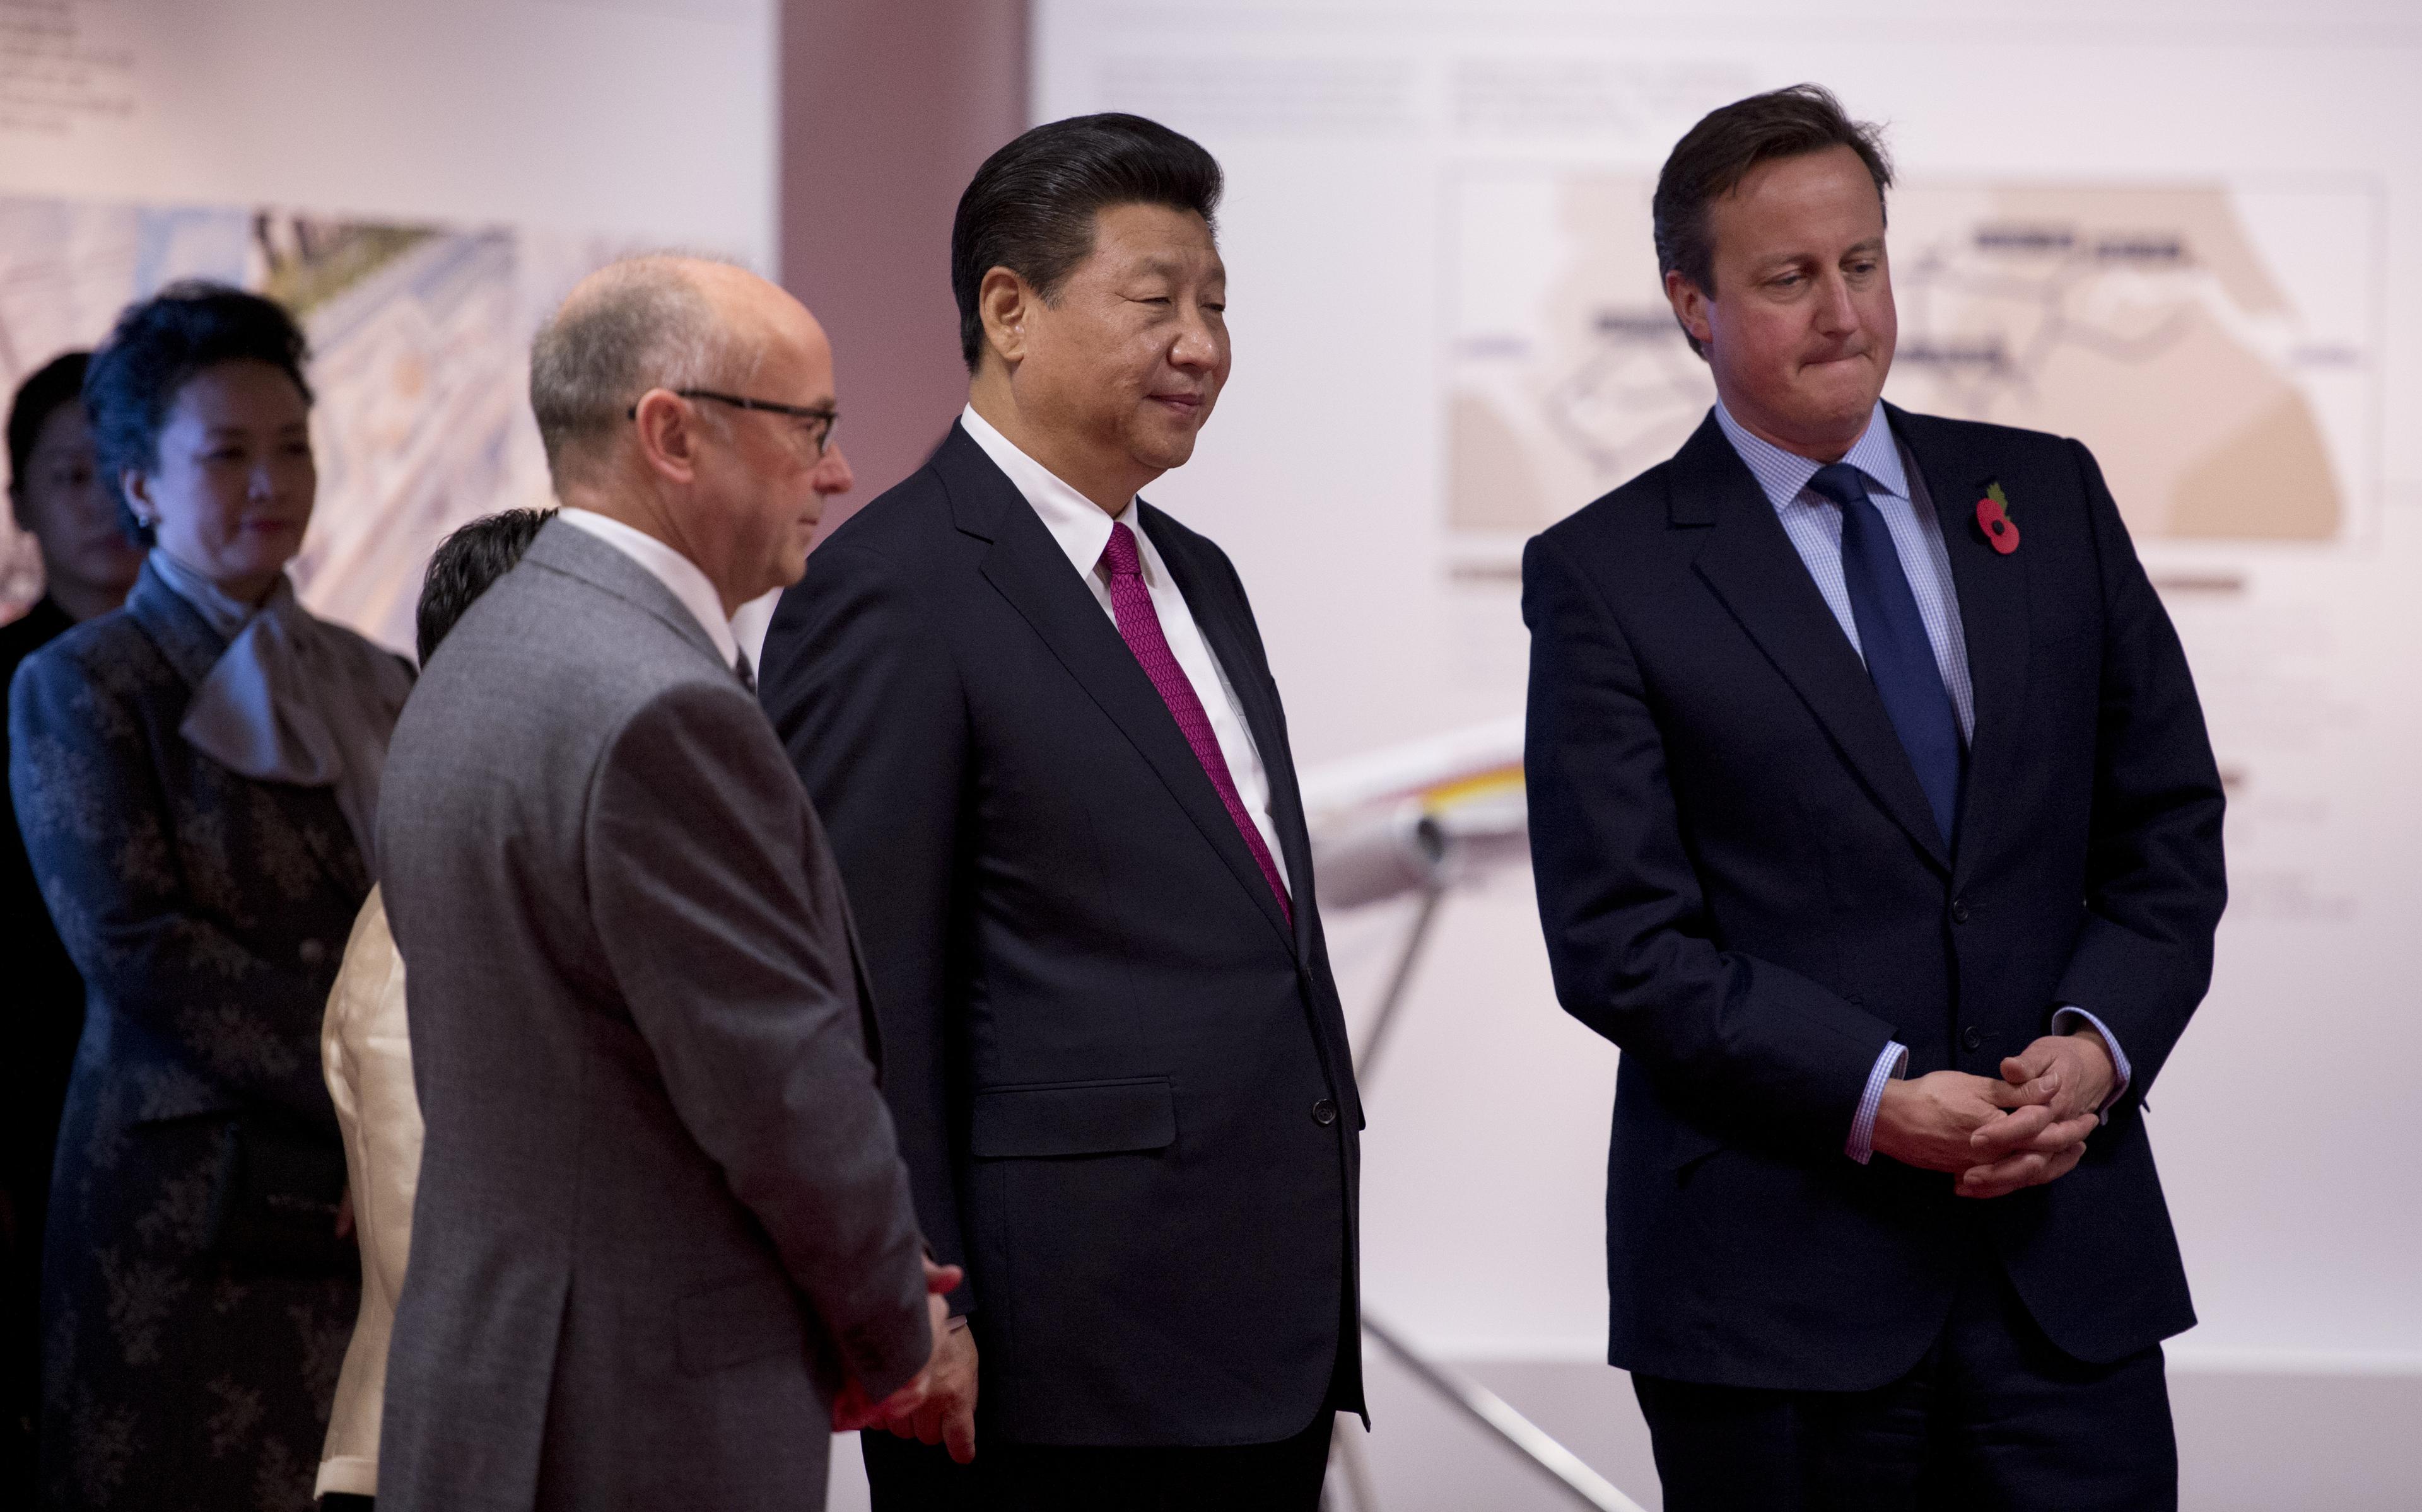  Storbritanniens premiärminister David Cameron hade svårt att ge luft åt kritiken om Kinas människorättsbrott när Xi Jinping i förra veckan besökte Storbritannien. Som tur var fanns det andra som vågade säga vad de flesta tycker. (Foto: Oli Scarff/WPA/Getty Images) 